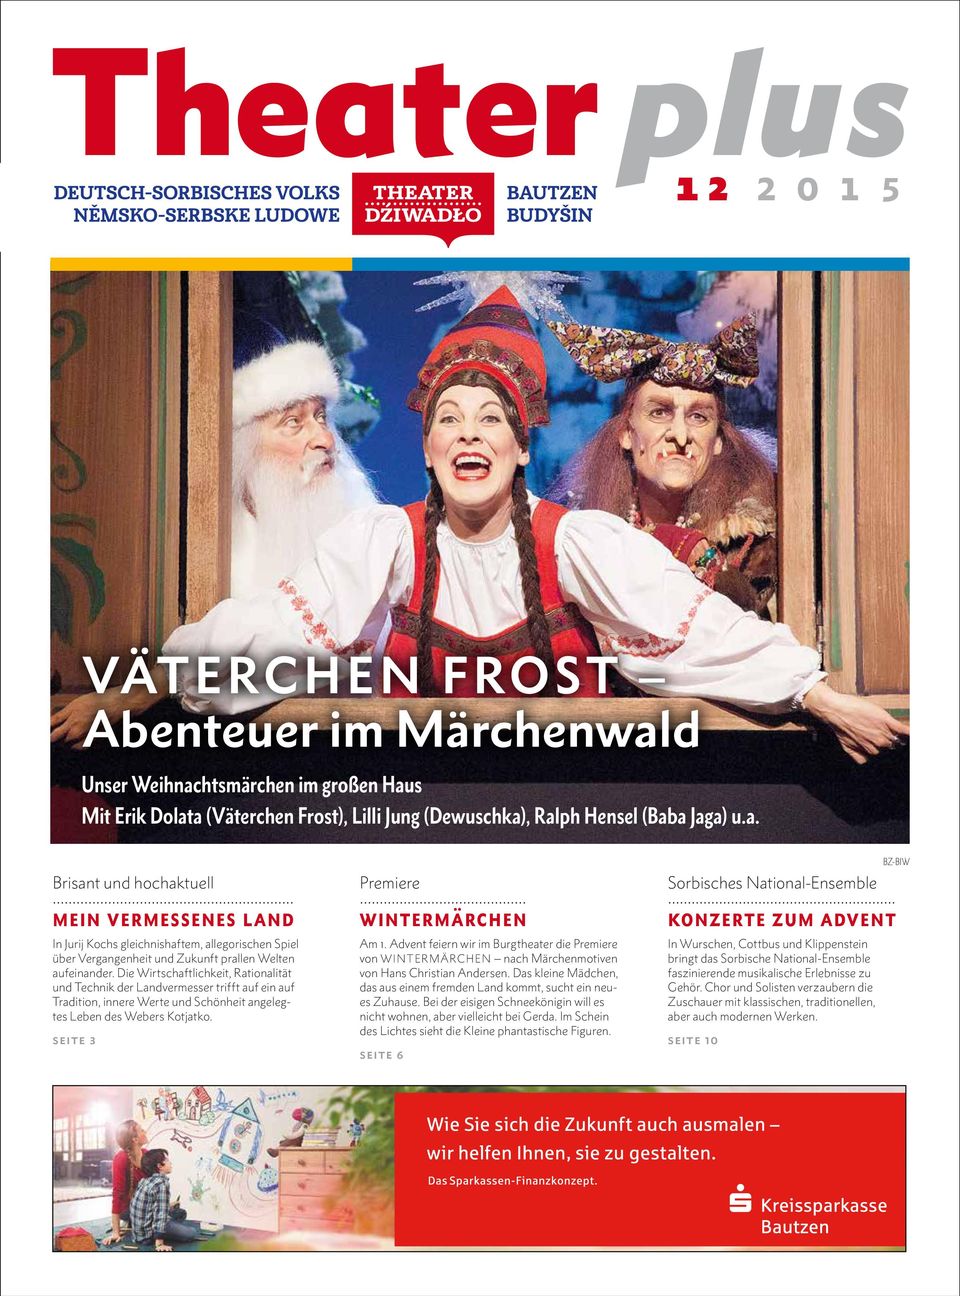 Advent feiern wir im Burgtheater die Premiere von WINTERMÄRCHEN nach Märchenmotiven von Hans Christian Andersen. Das kleine Mädchen, das aus einem fremden Land kommt, sucht ein neues Zuhause.